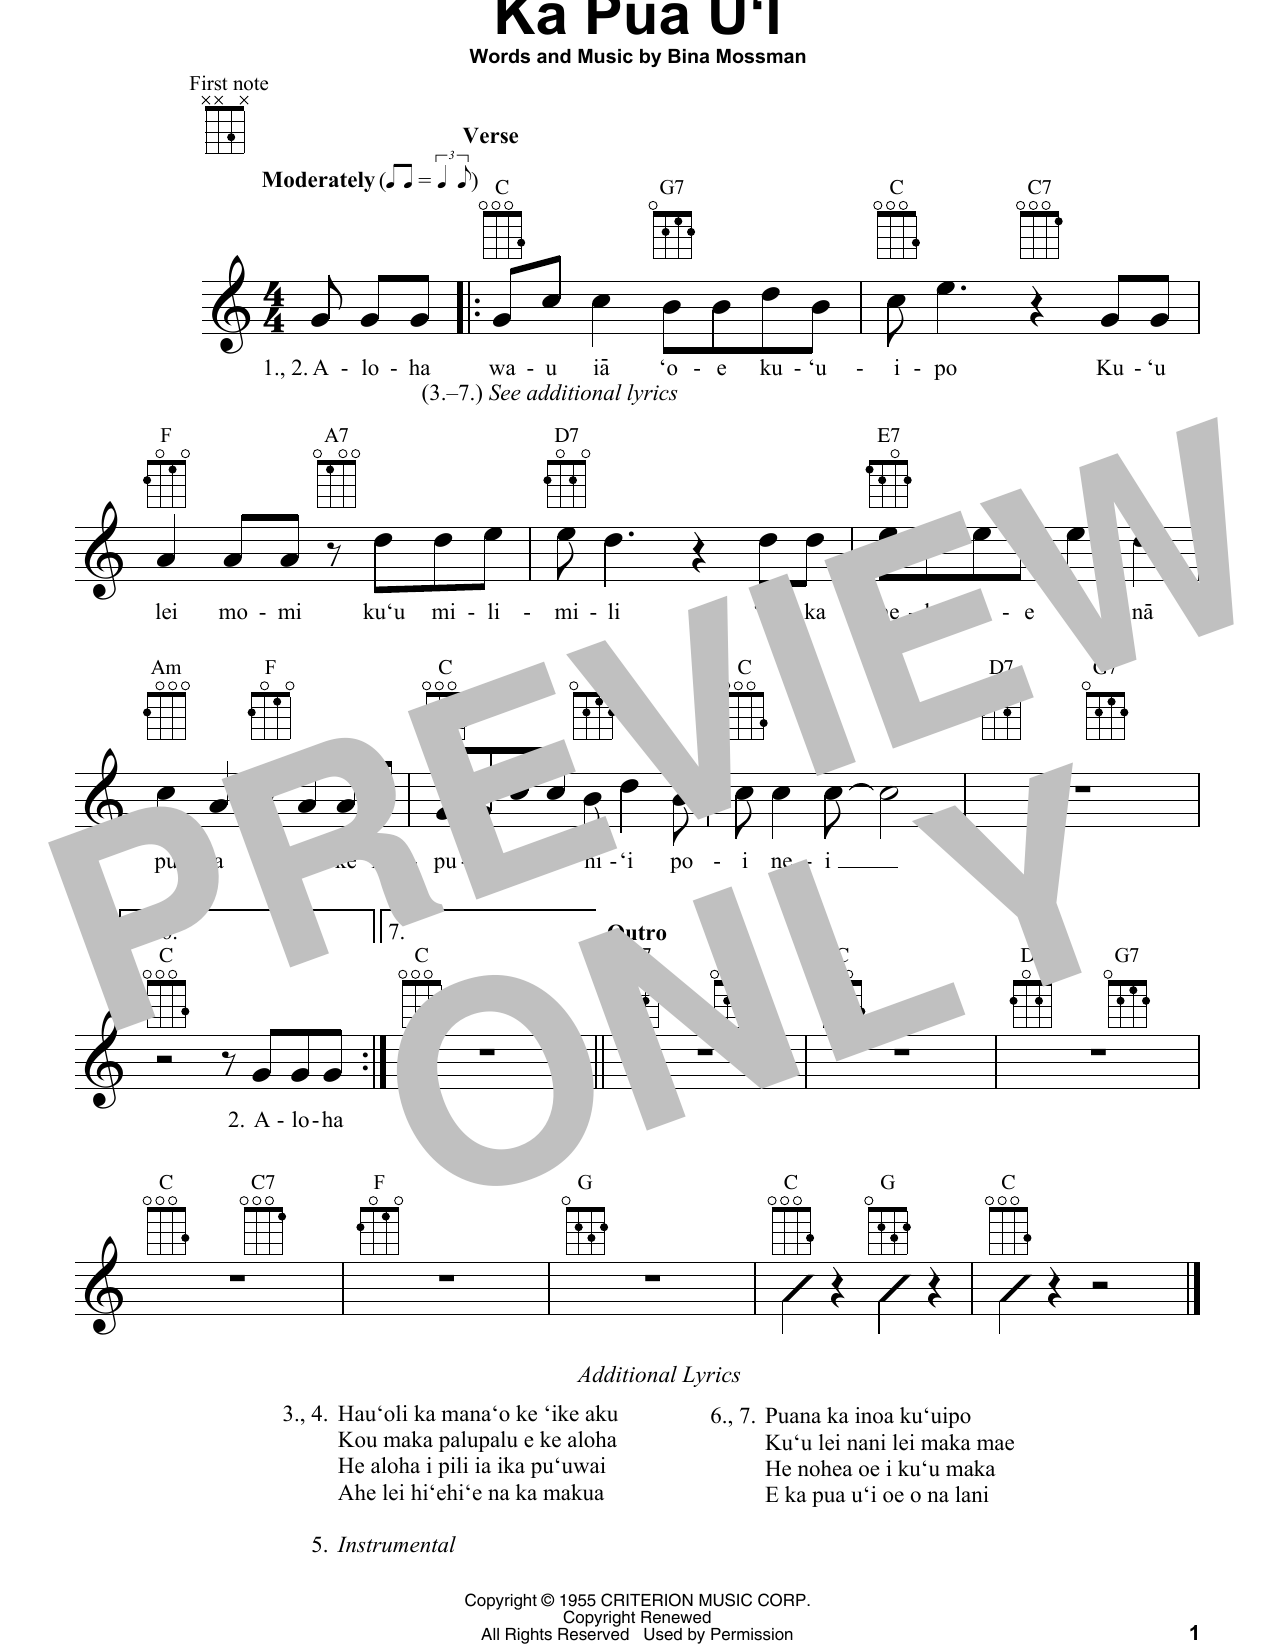 Bina Mossman Ka Pua U'I sheet music notes and chords arranged for Ukulele